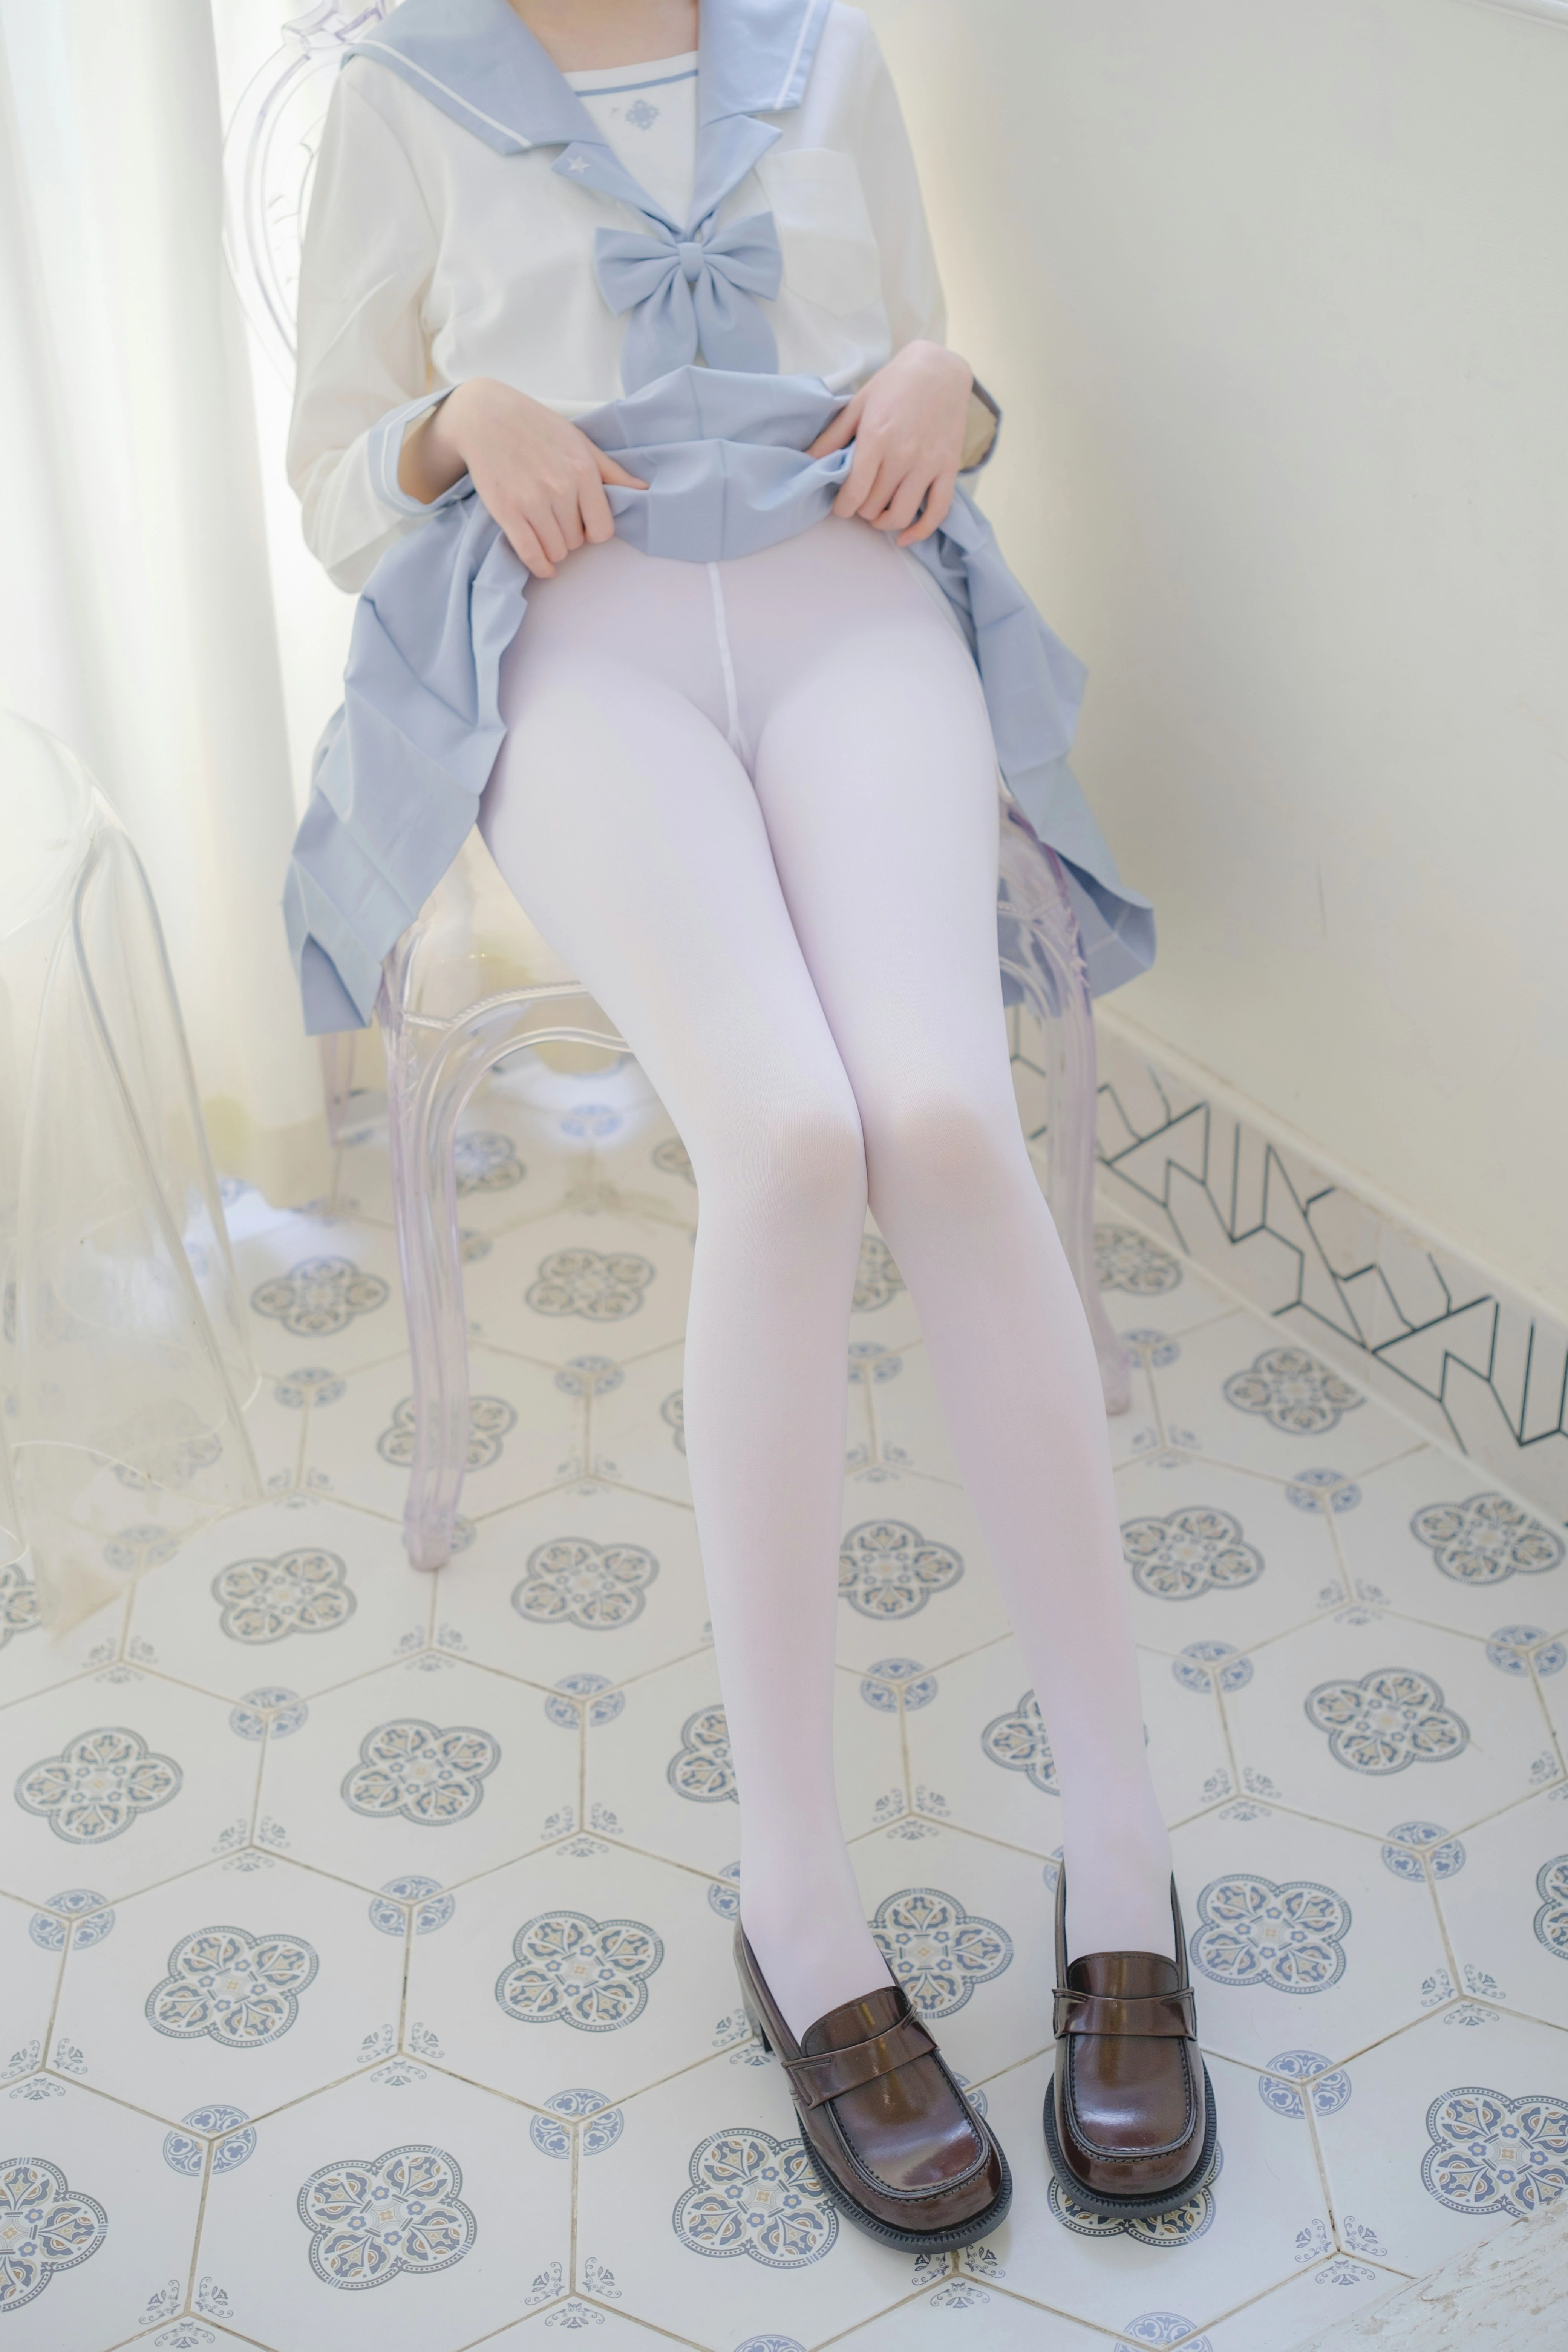 [森萝财团]内部VIP系列 微风-04 少女萝莉小学妹 白色JK制服与蓝色短裙加白色丝袜美腿私房写真集,0018